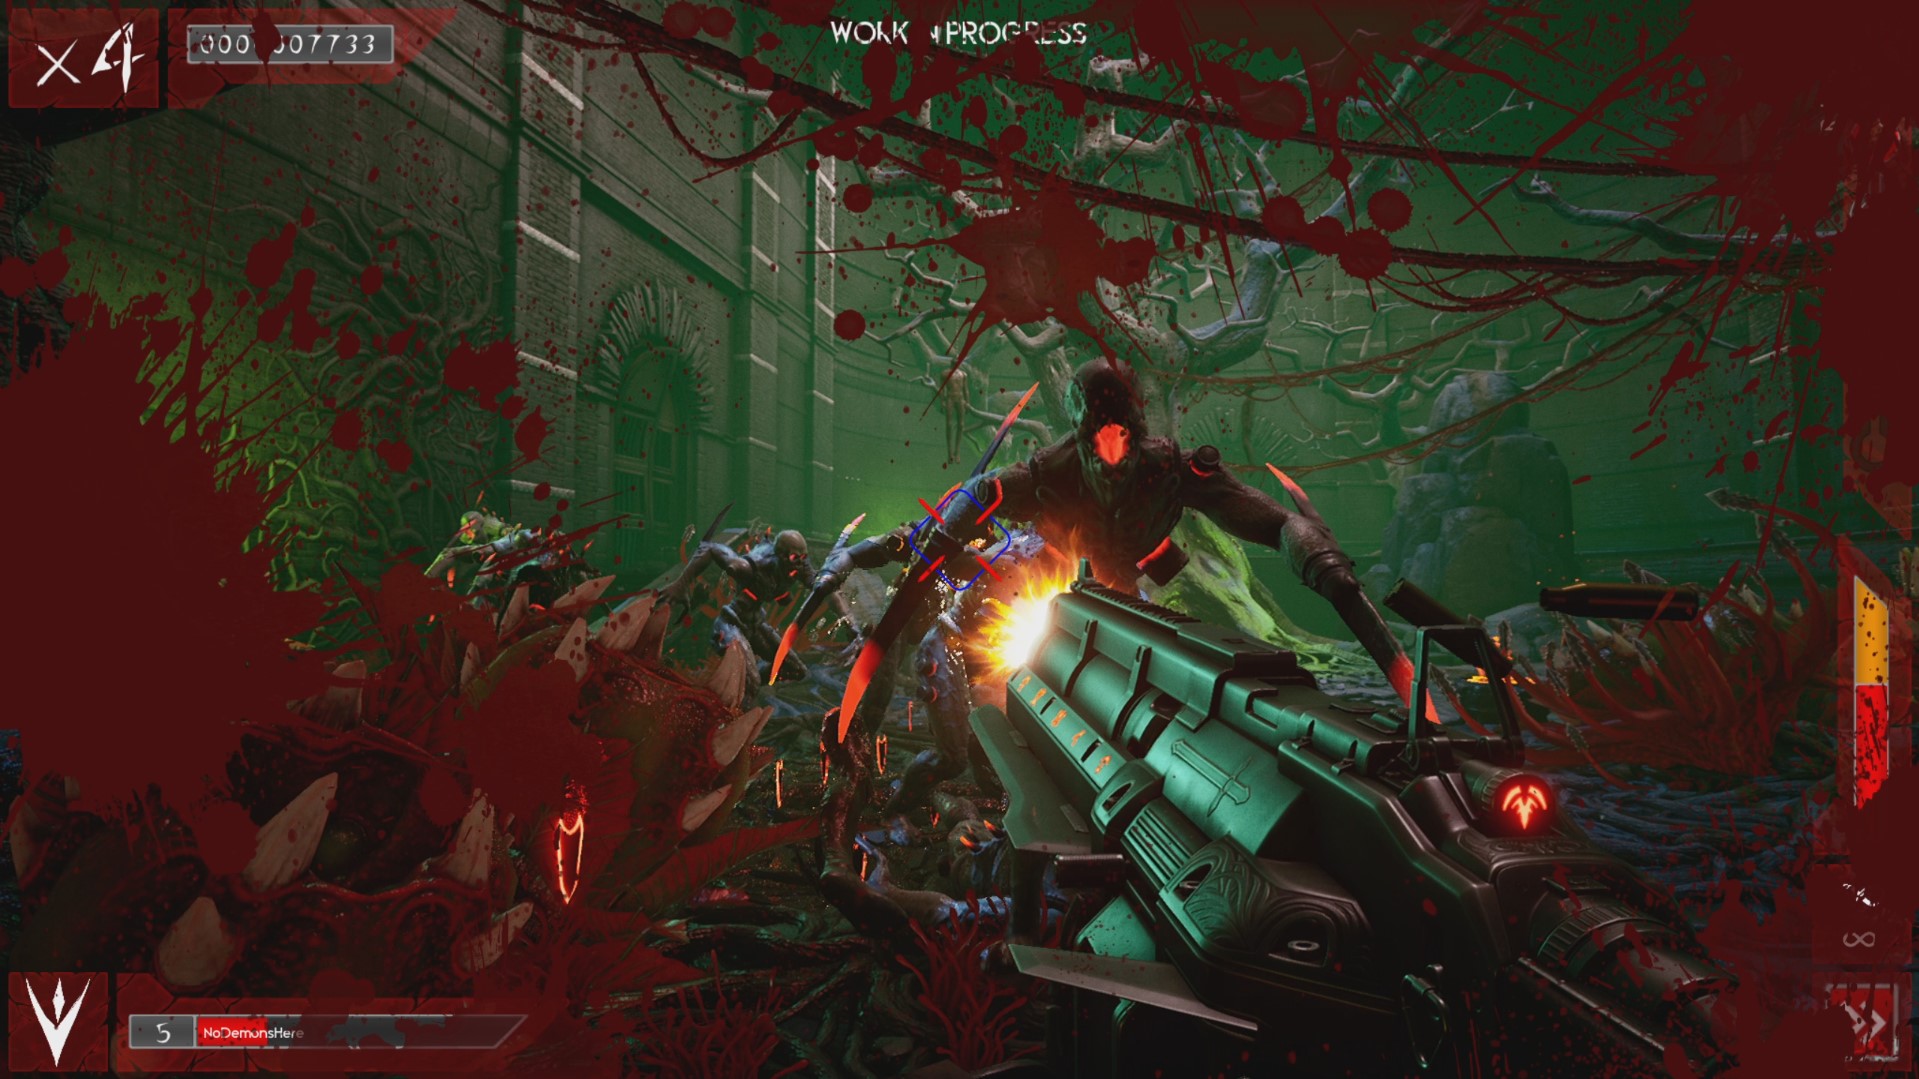 Scathe es el nuevo FPS que llegará a Xbox este 2022 - Damos la bienvenida al nuevo shooter que nos adentra en el Infierno. Scathe llega para llenar nuestras pantallas de armas, demonios y sangre.